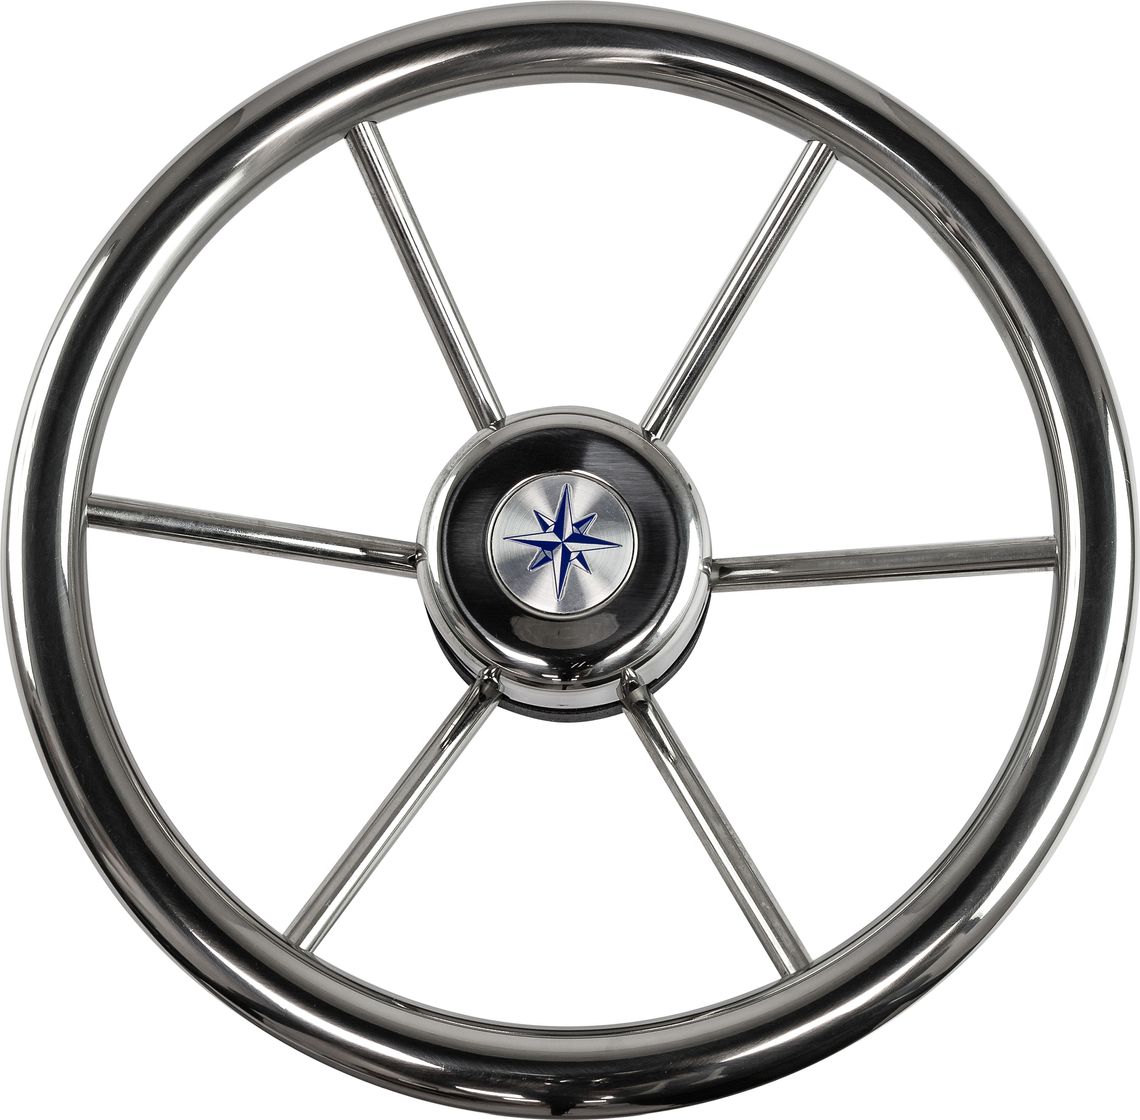 Рулевое колесо LEADER INOX нержавеющий обод серебряные спицы д. 320 мм VN7332-22 колесо для тачки variant 12110 камерное 4 80 4 00 8 с подшипником 20 мм обод металл к99 2